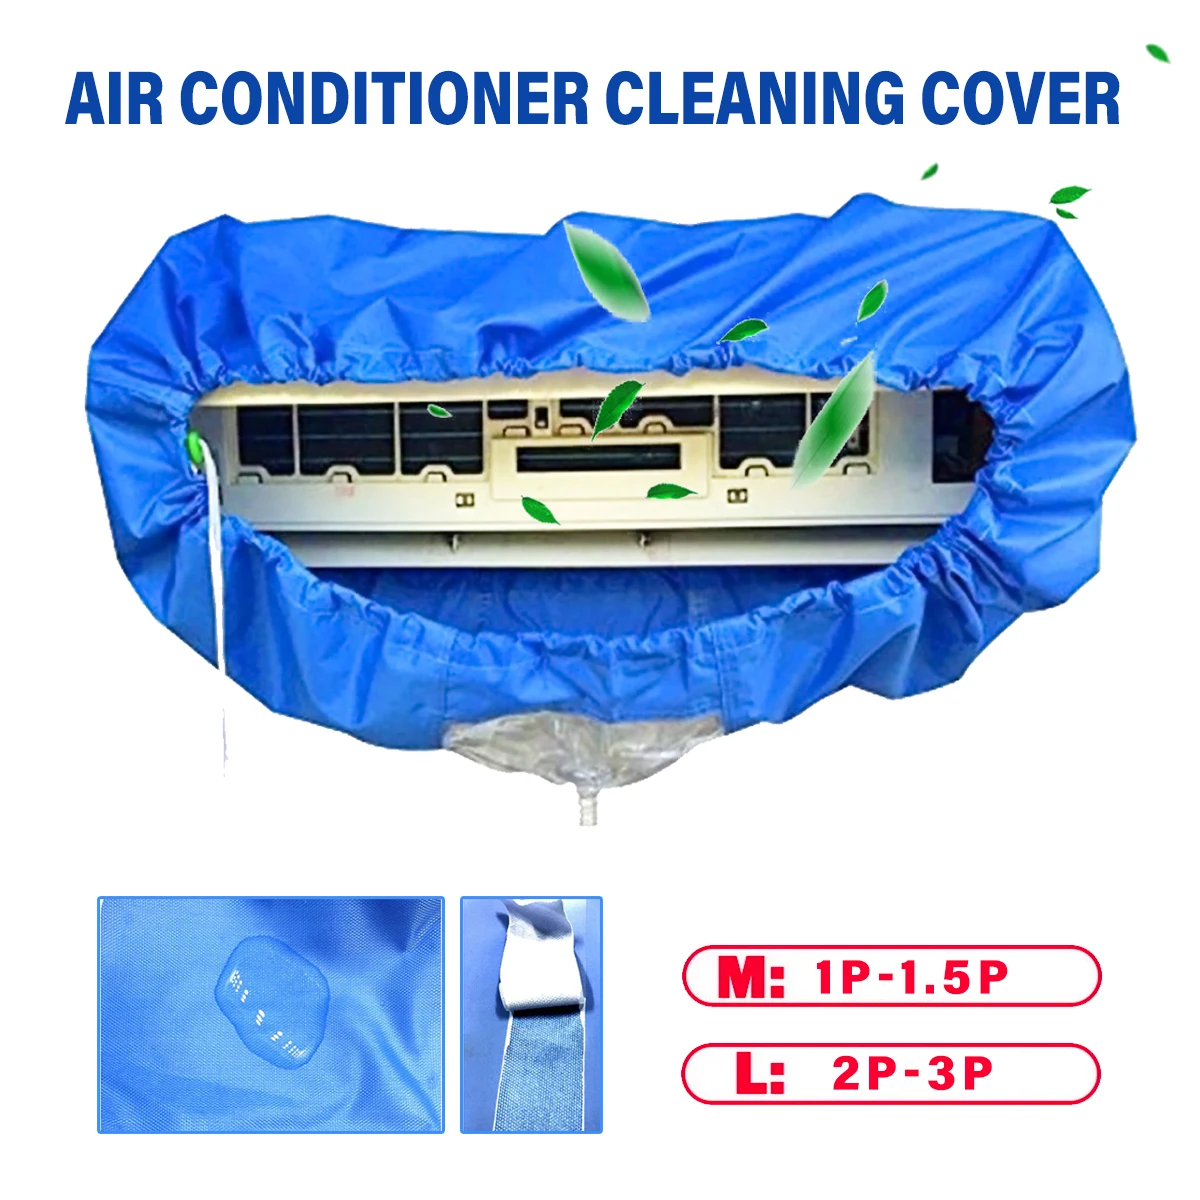 

Крышка Кондиционера, водонепроницаемая моющаяся настенная крышка для защиты от заката воздуха, полиуретановая Защитная сумка для 1P 1,5 P 2P 3P, ...